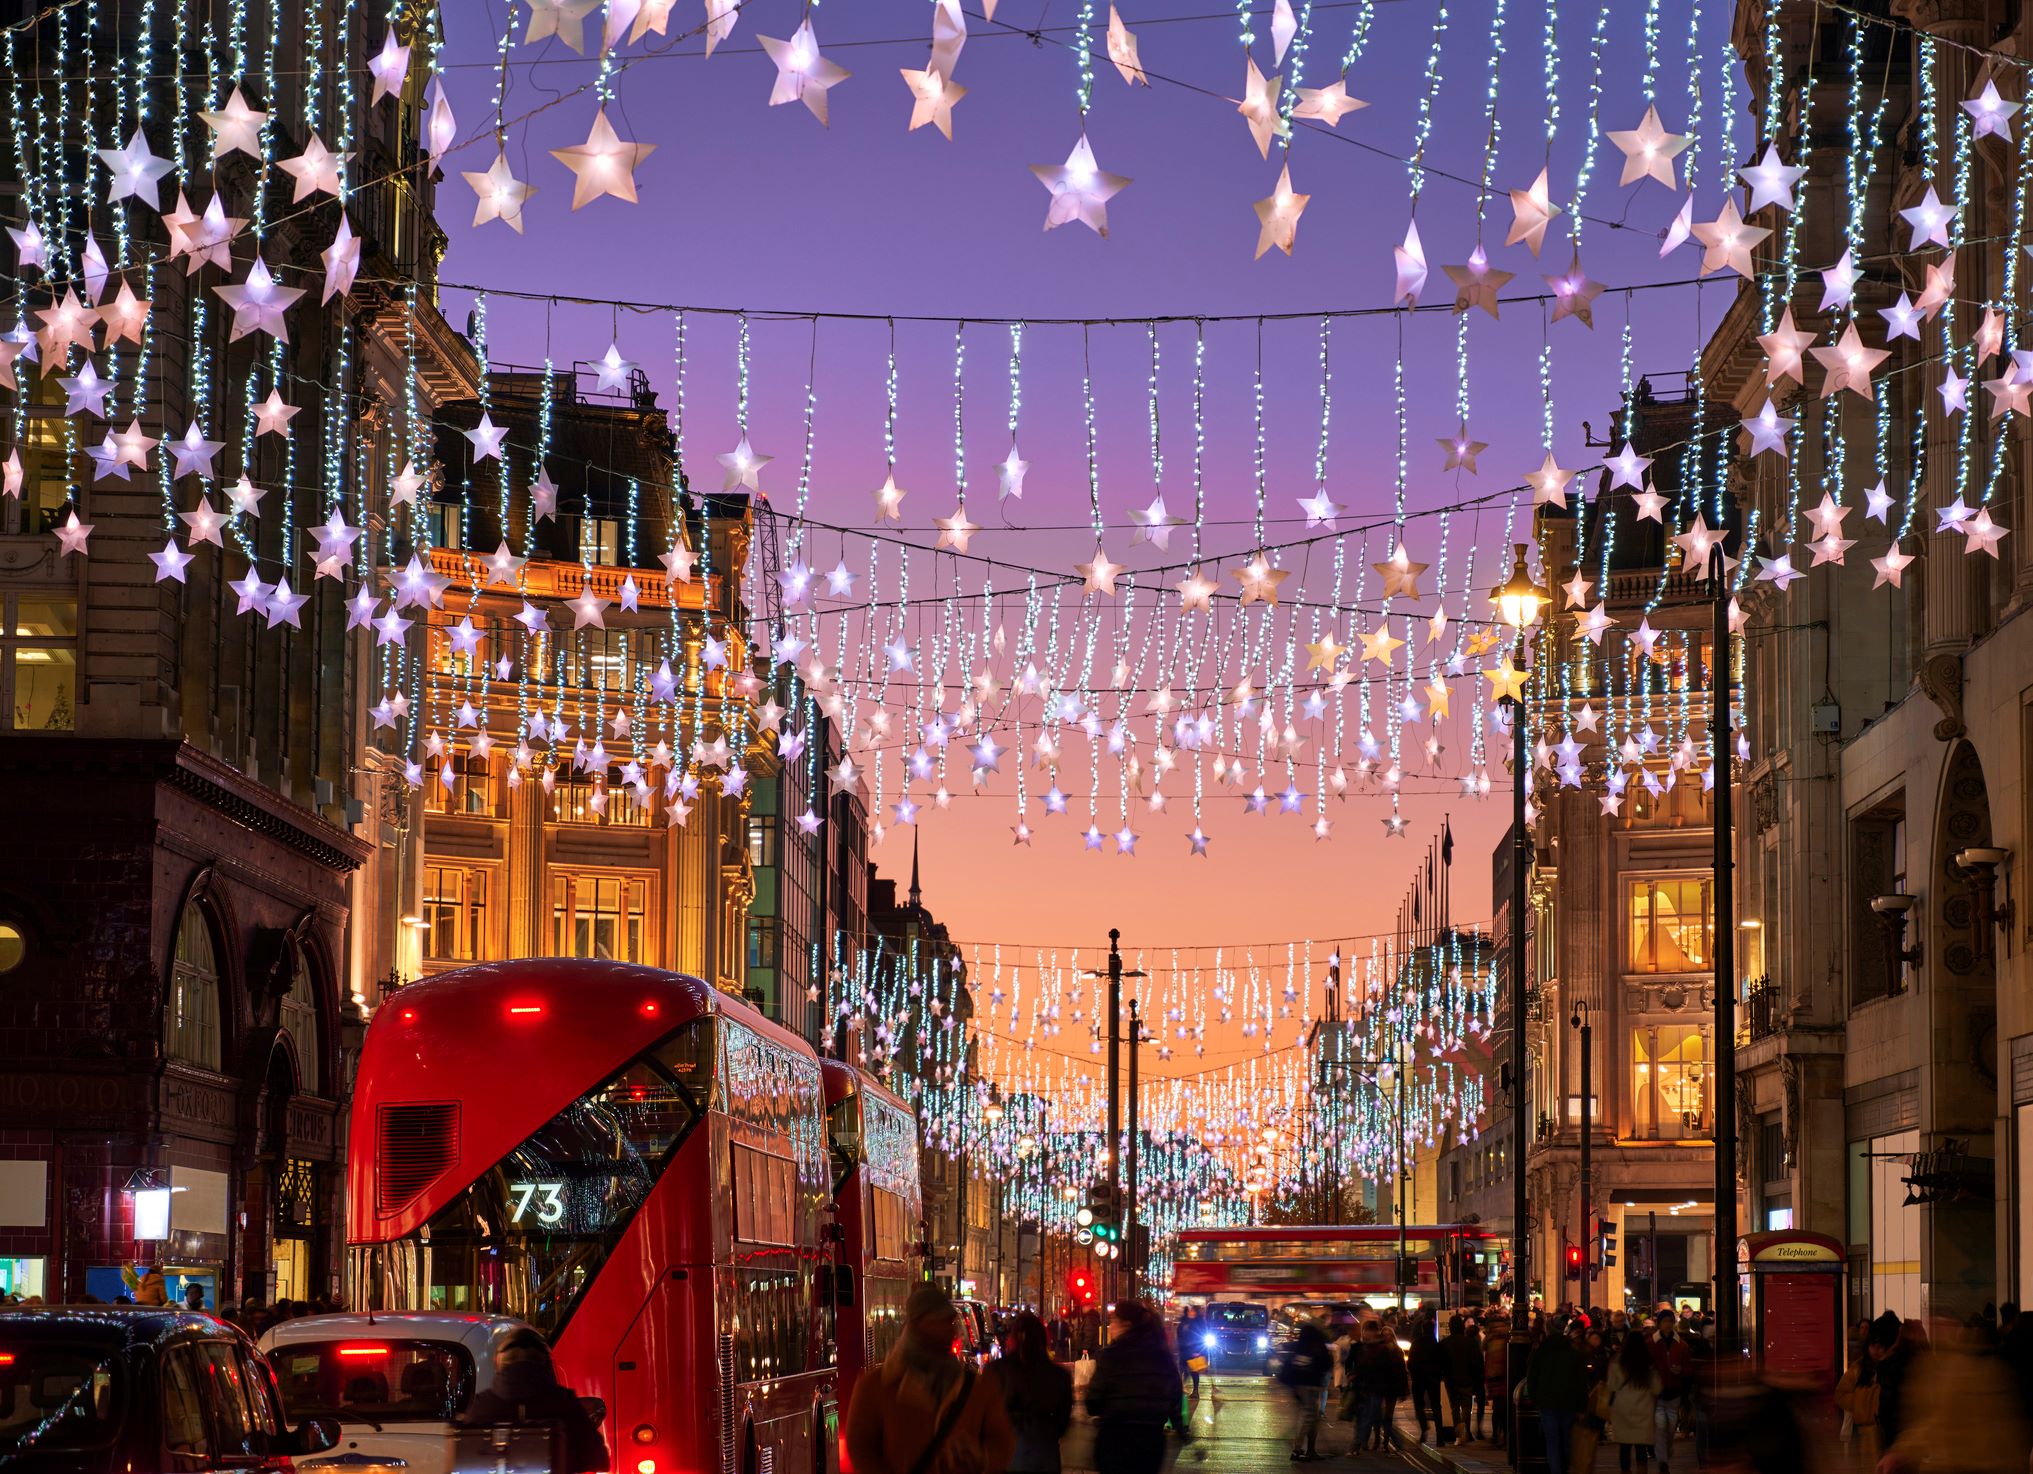 A legnépszerűbb utca Londonban az Oxford Street, karácsonyi csúcsforgalomban